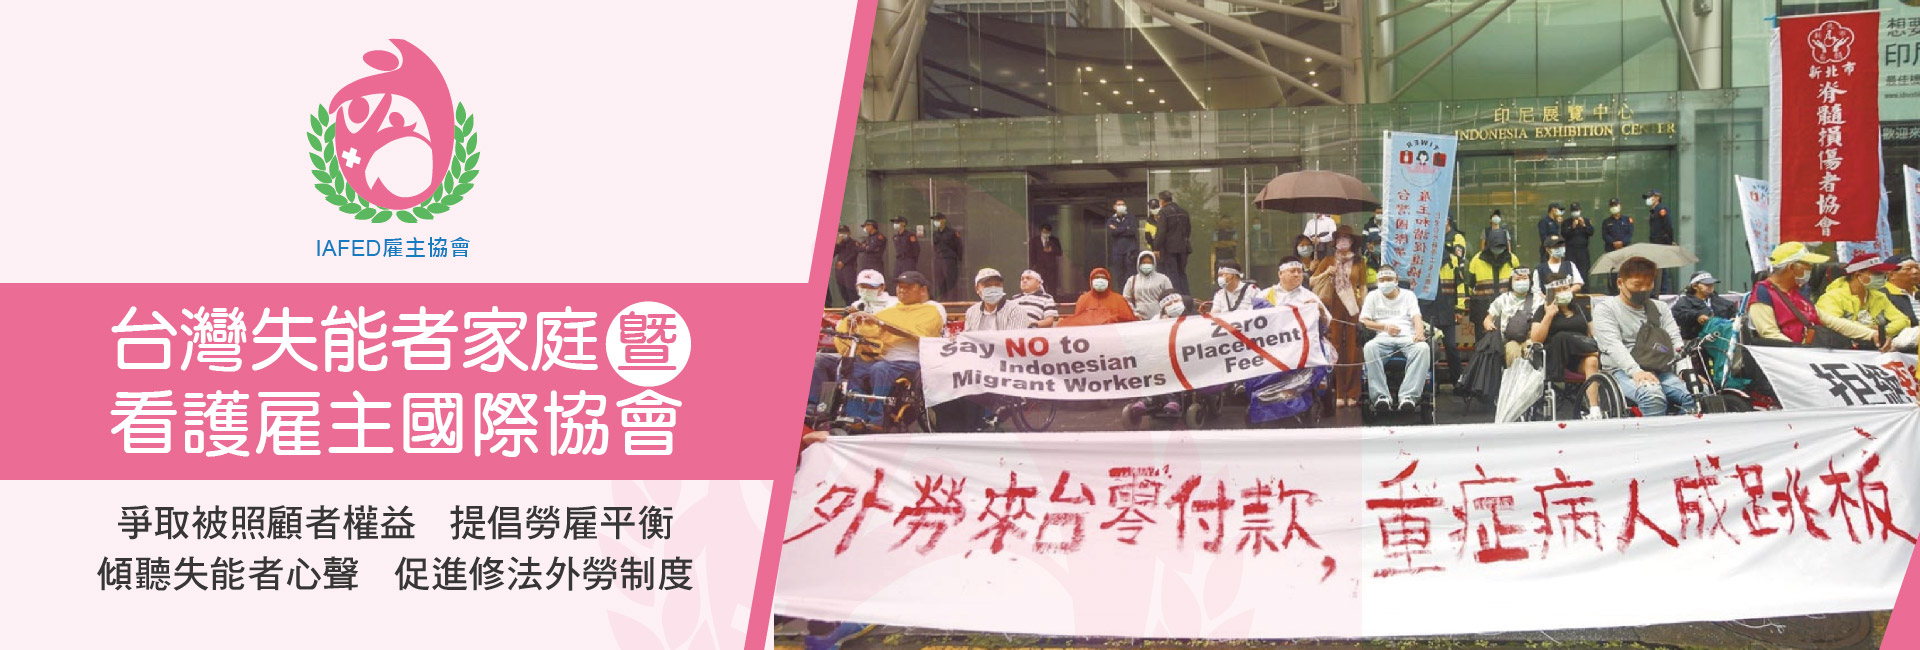 台灣失能者家庭暨看護雇主國際協會-募款活動